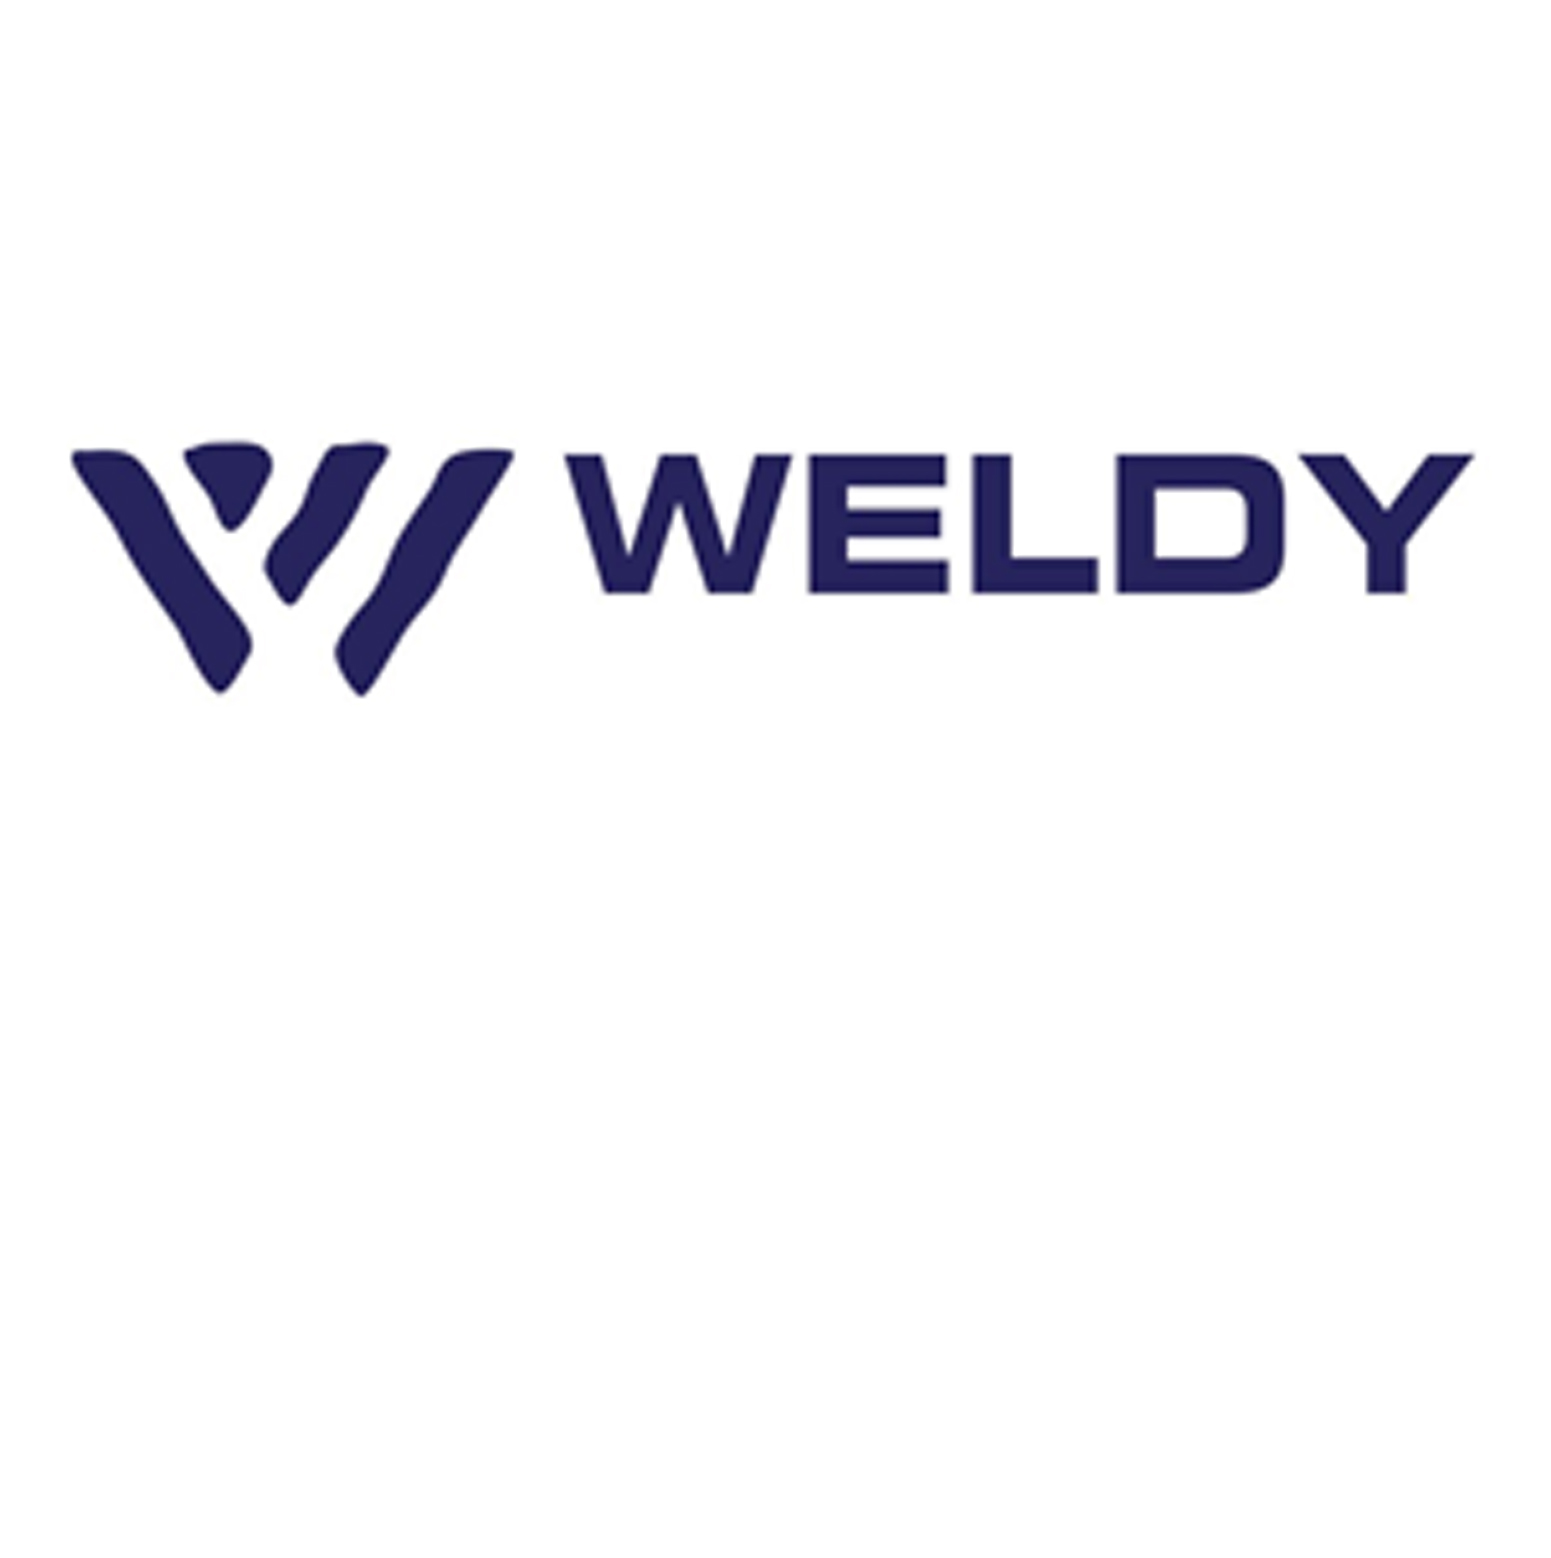 WELDY, a brand of Leister